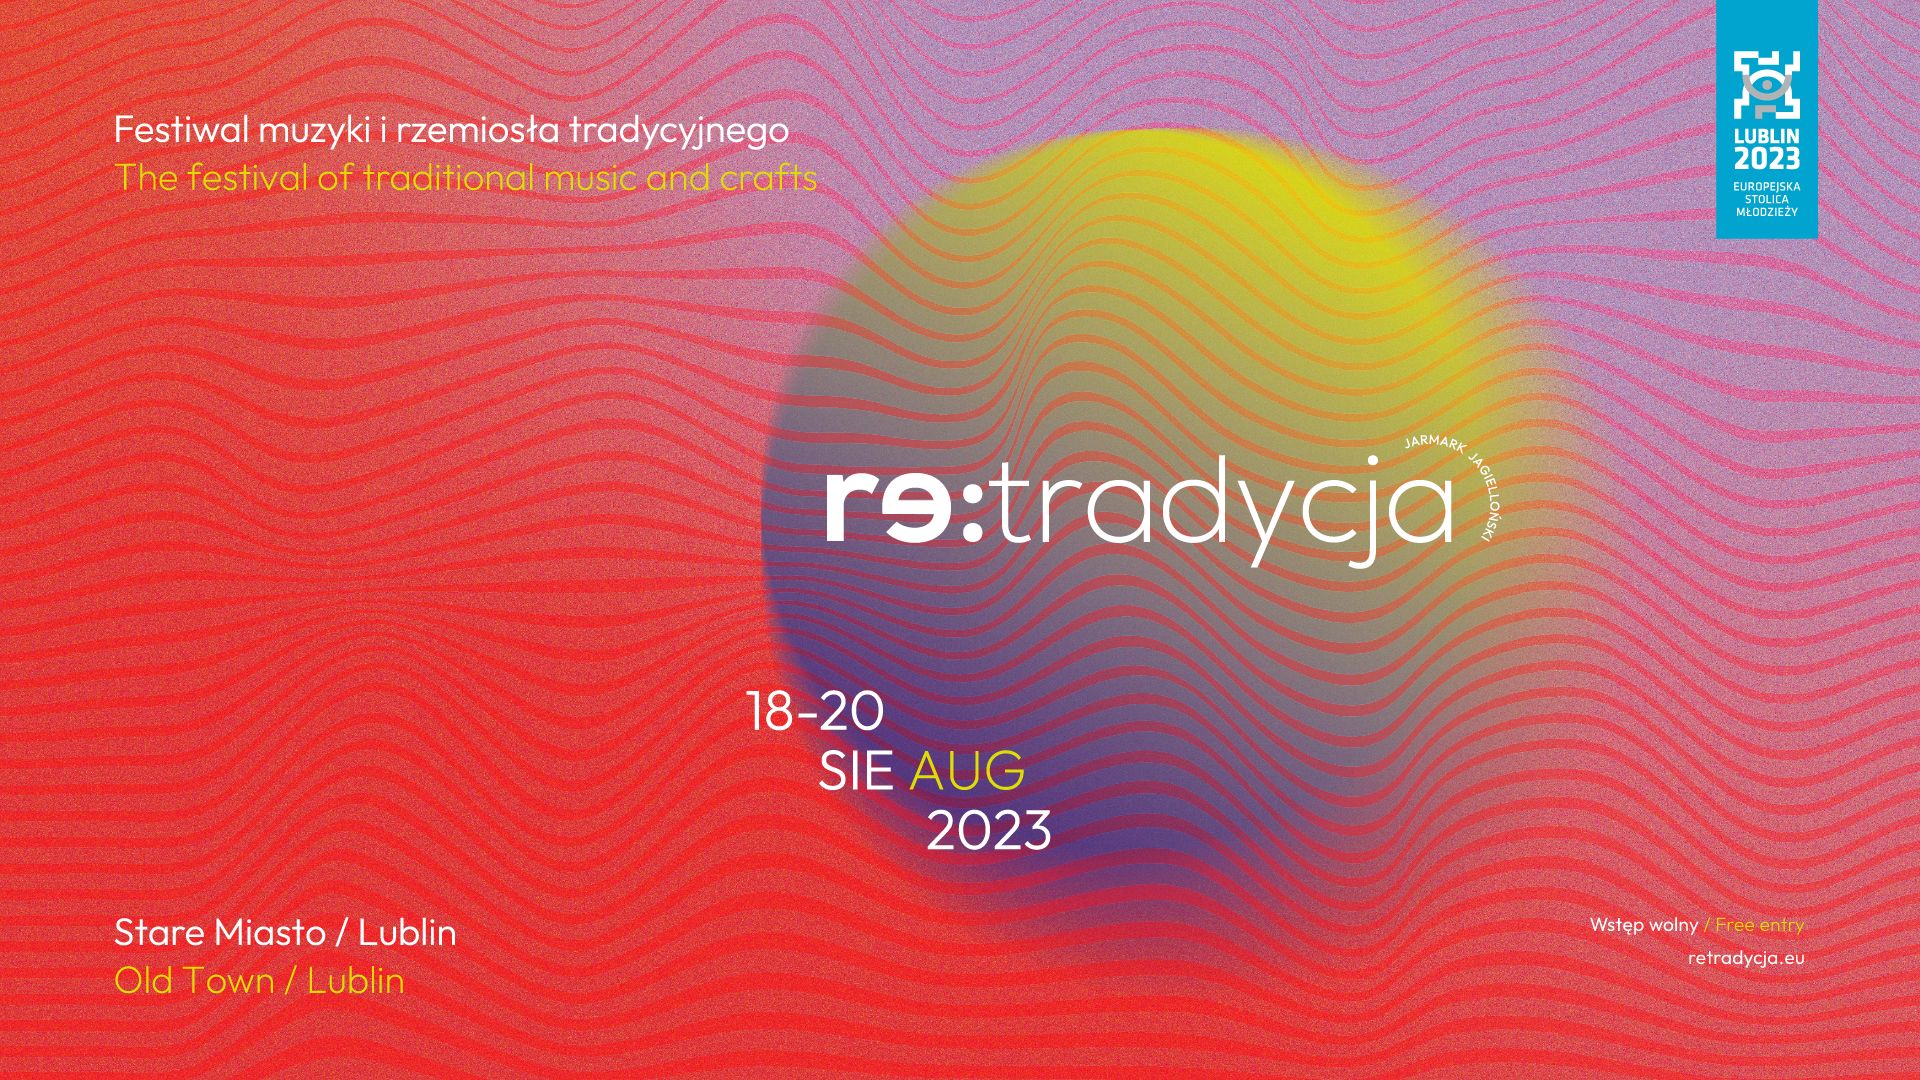 Plakat promujący Festiwal Re:tradycja 2023.